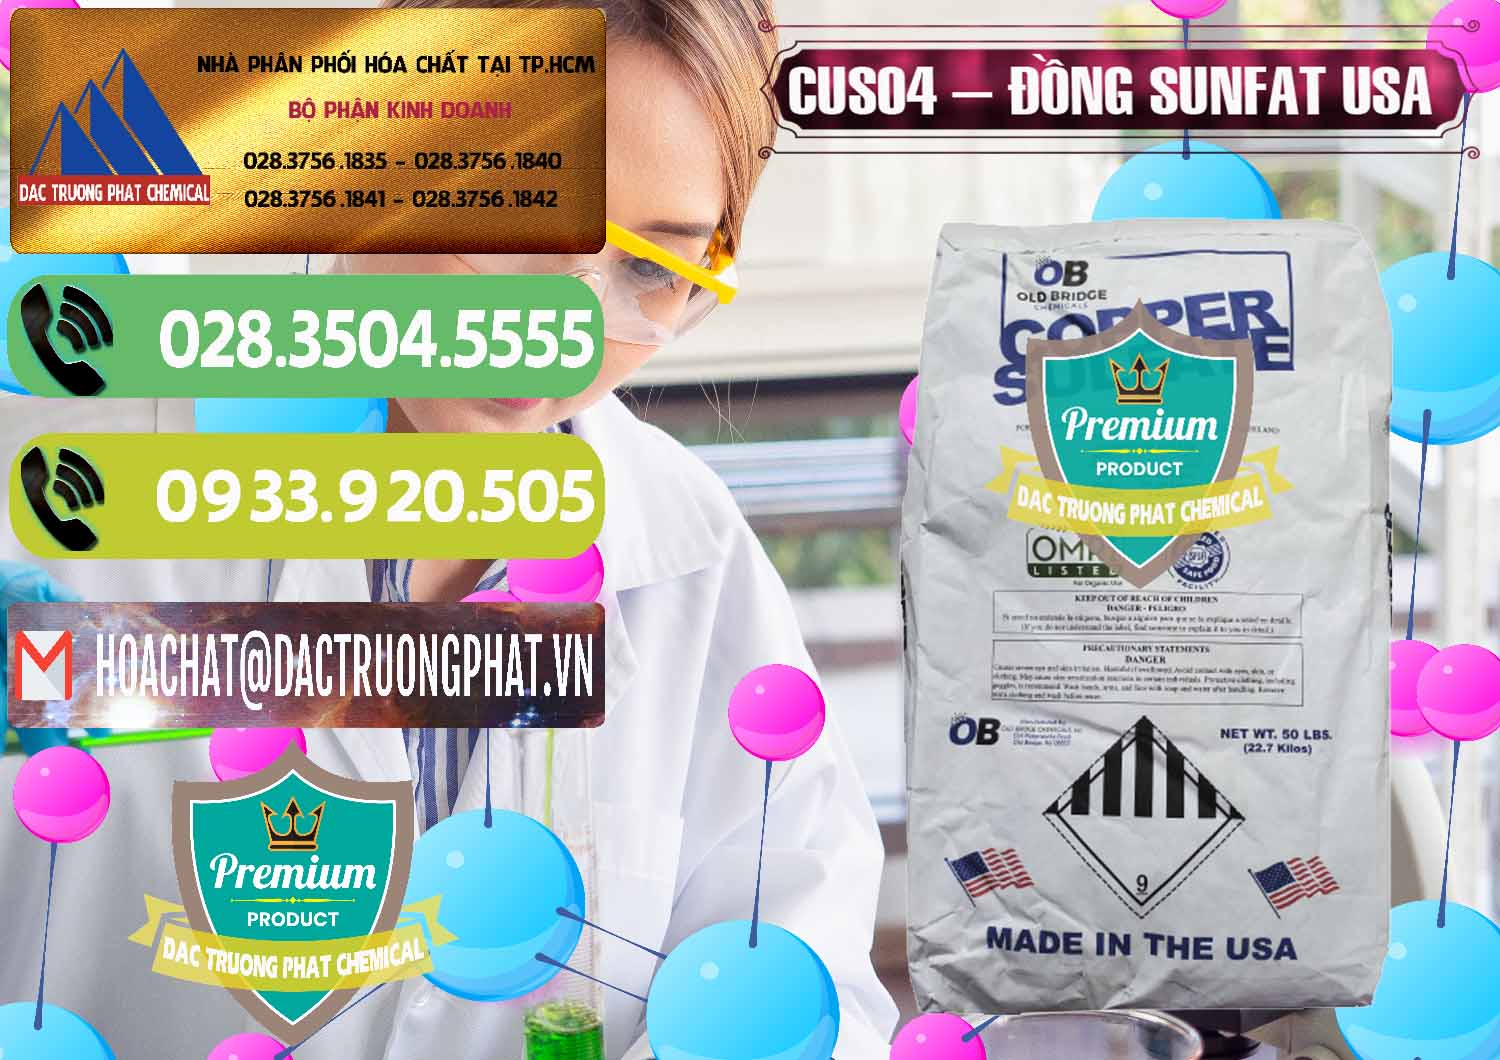 Cty chuyên kinh doanh - bán CuSO4 – Đồng Sunfat Mỹ USA - 0479 - Đơn vị phân phối - cung cấp hóa chất tại TP.HCM - hoachatmientay.vn